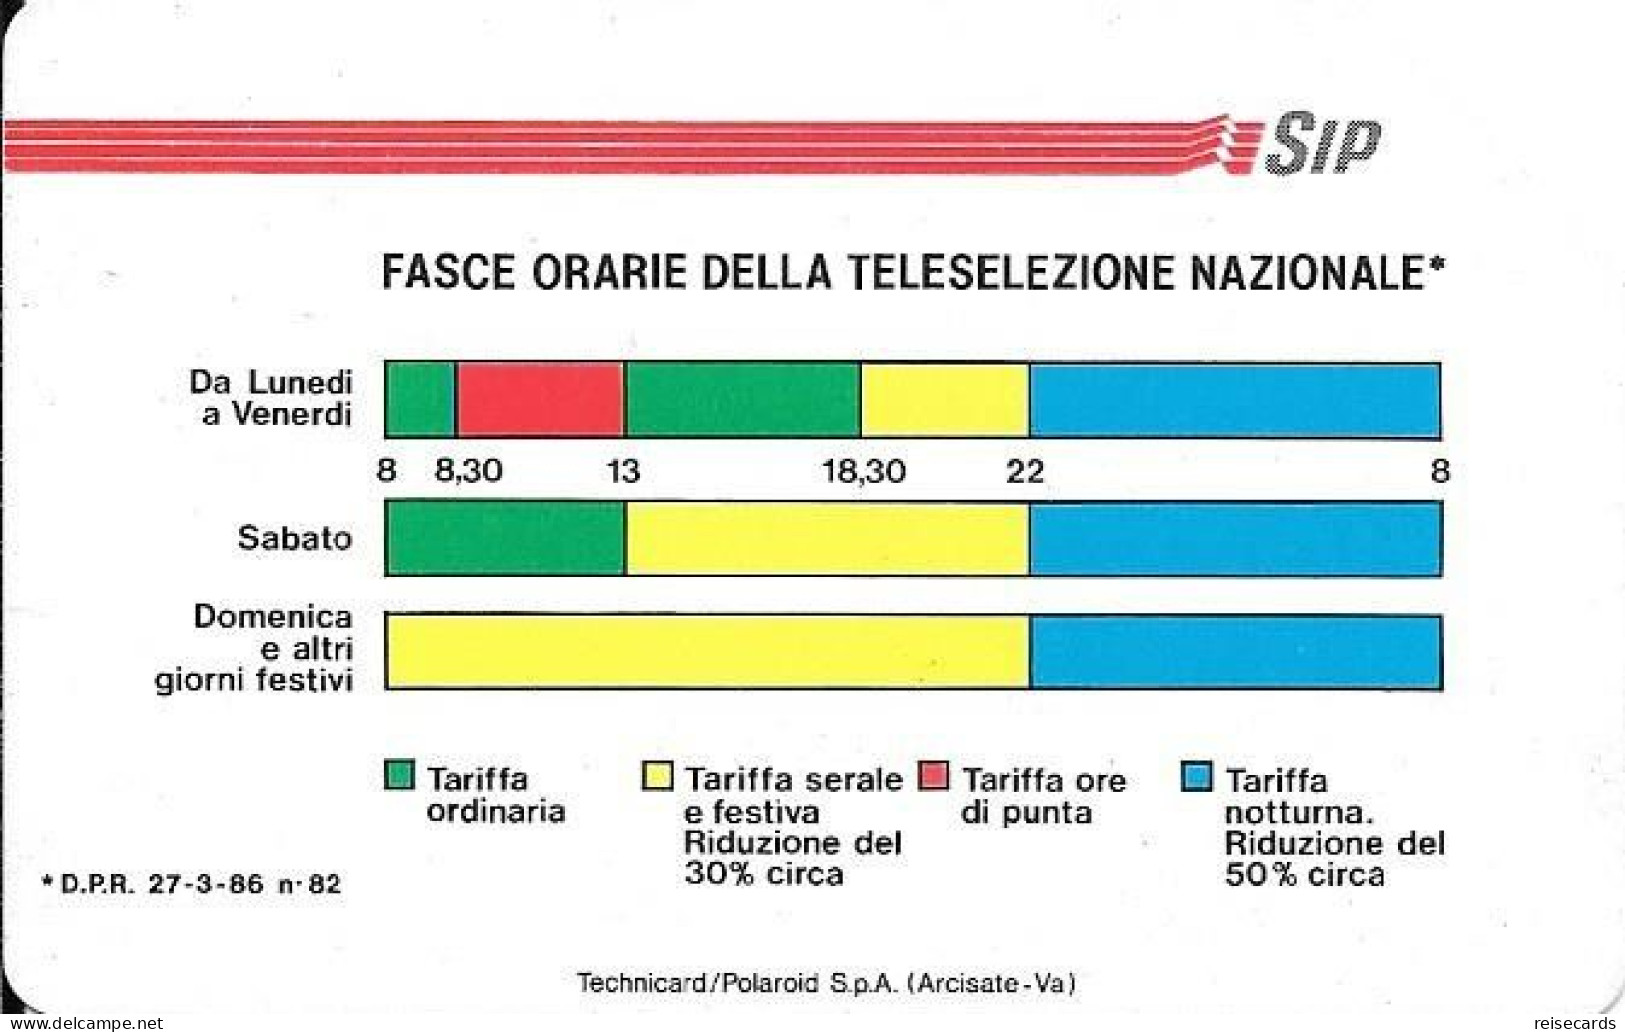 Italy: Telecom Italia SIP - Fasce Orarie Della Teleselezione Nazionale. Watermarks - Openbare Reclame